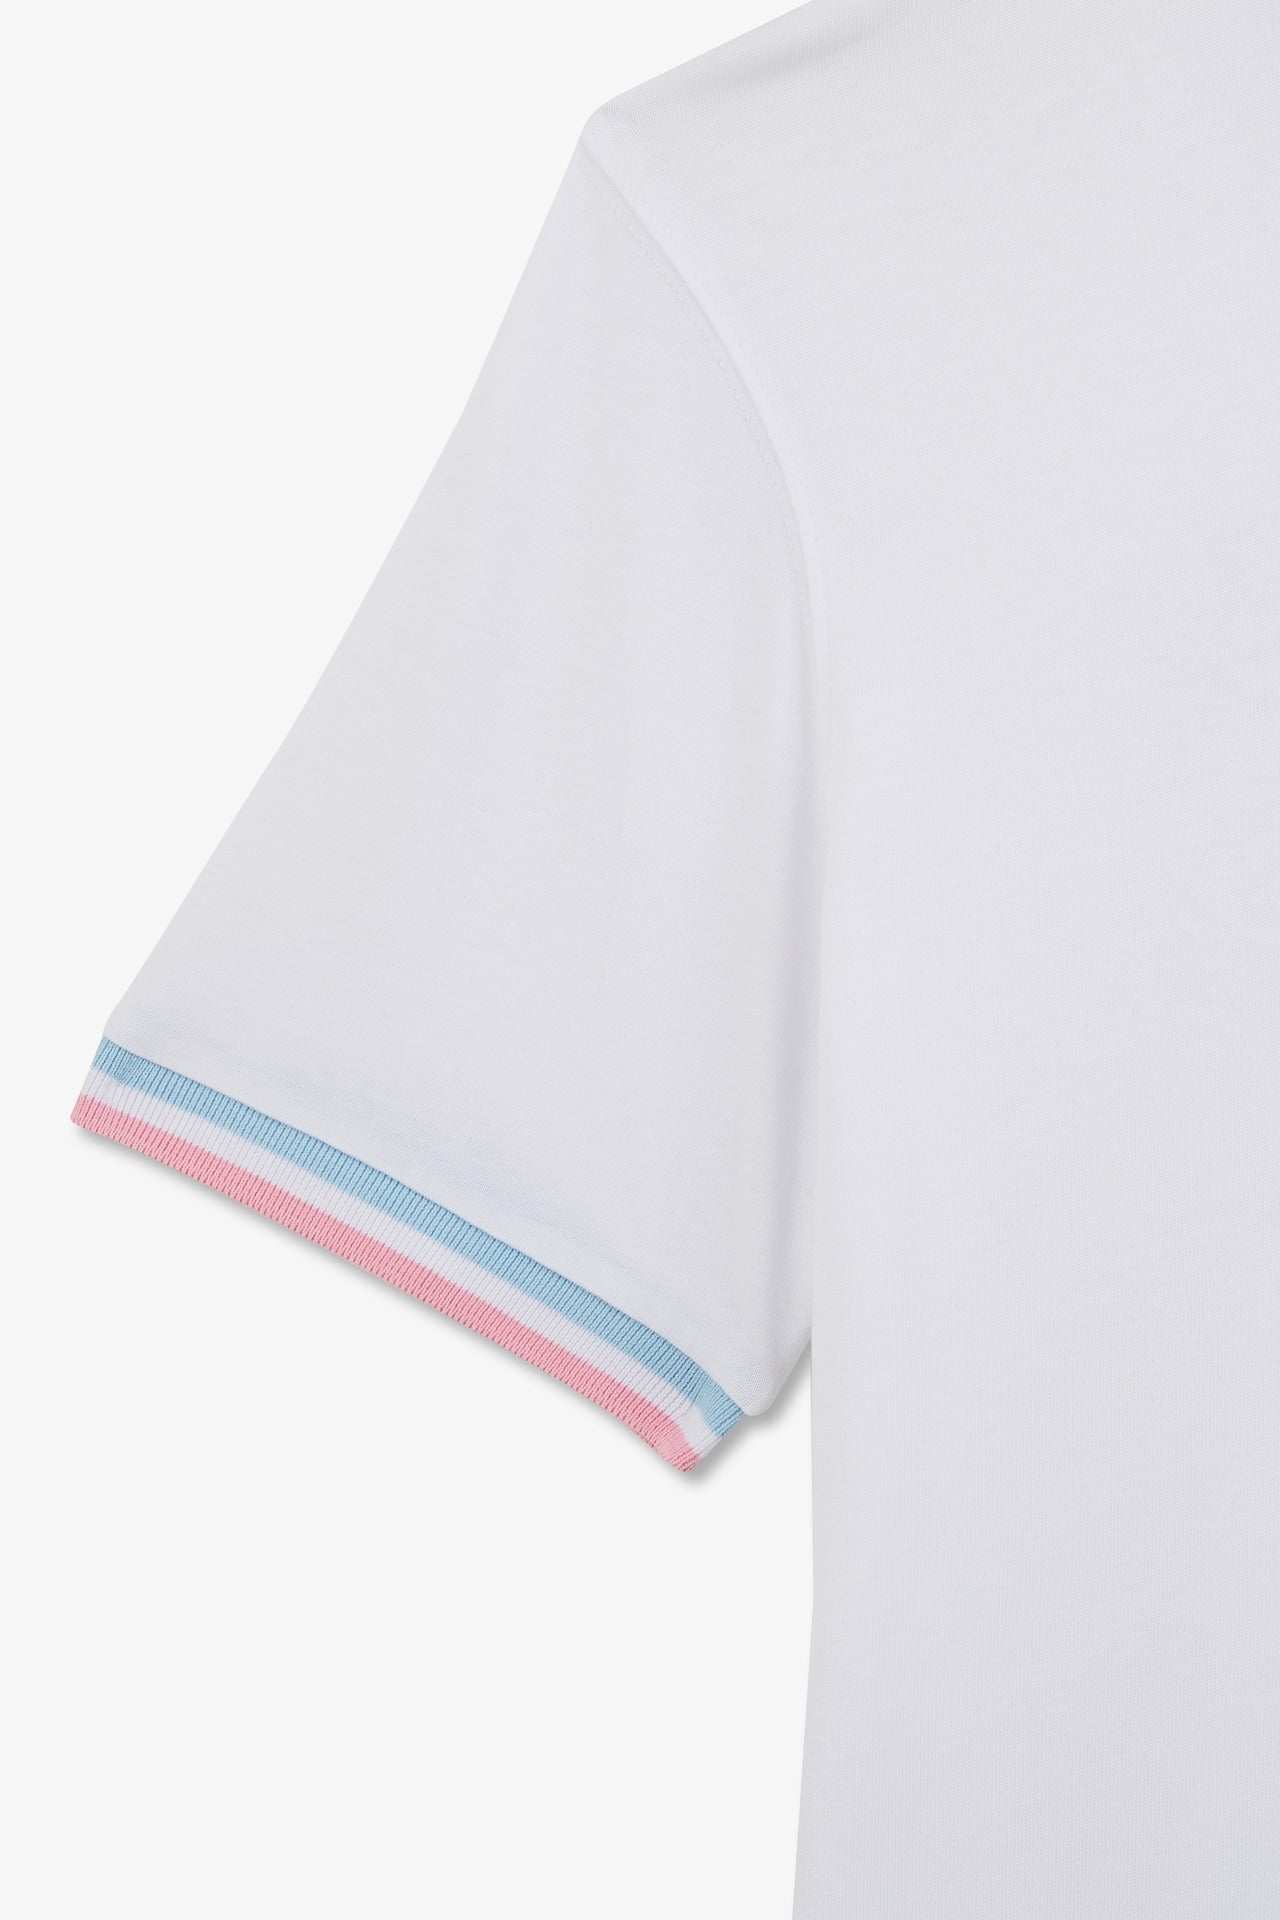 T-shirt manches courtes blanc avec logo reliefé